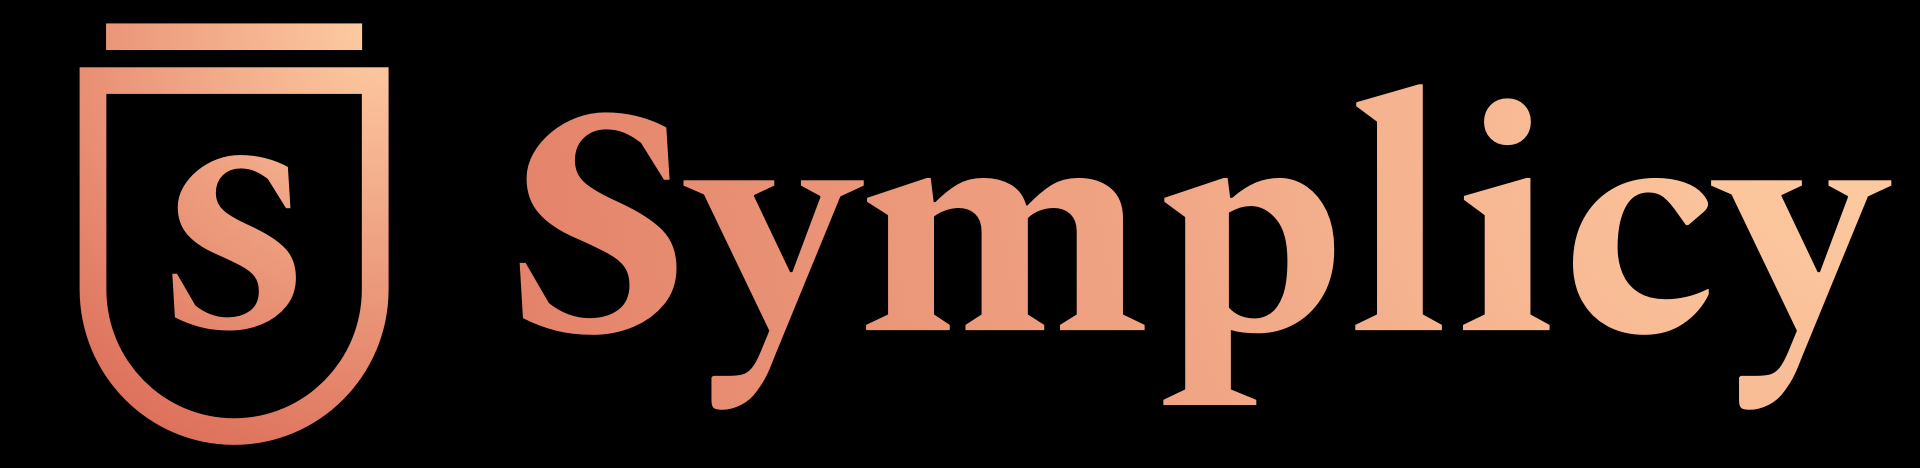 symplicy-logo-fondnoir.jpg